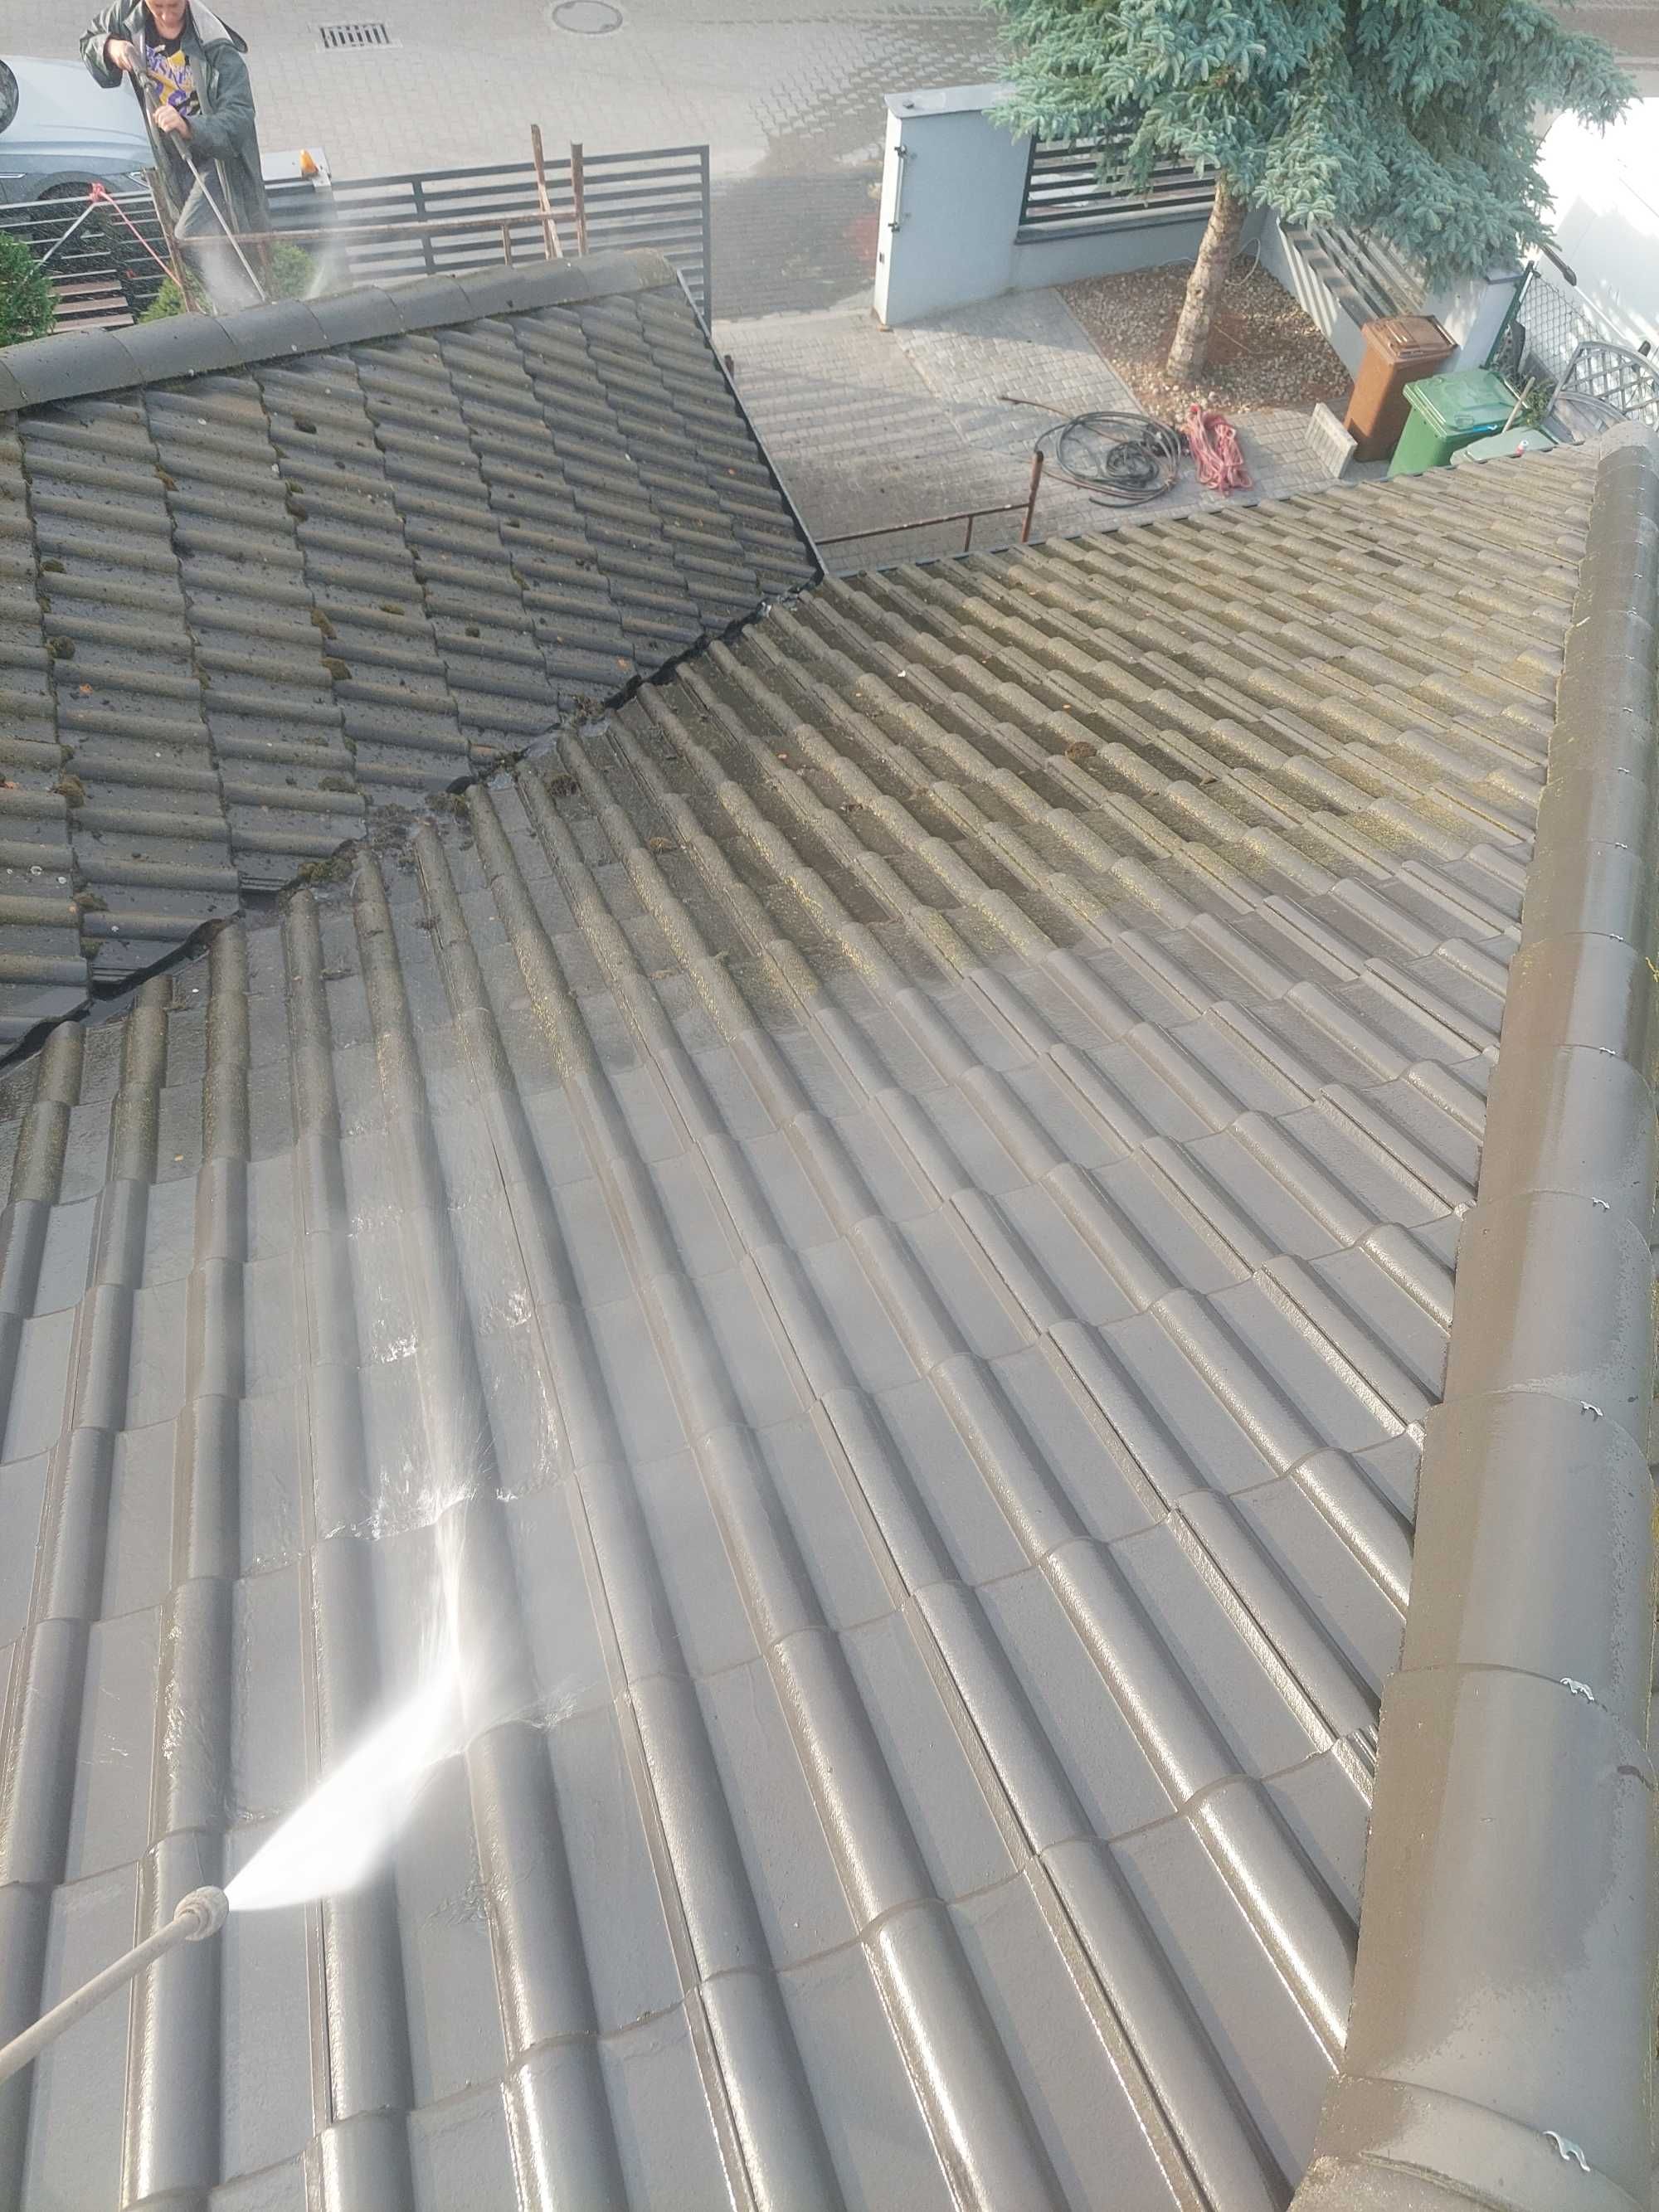 Mycie dachu elewacji kostki brukowej Malowanie dachu elewacji podbitka